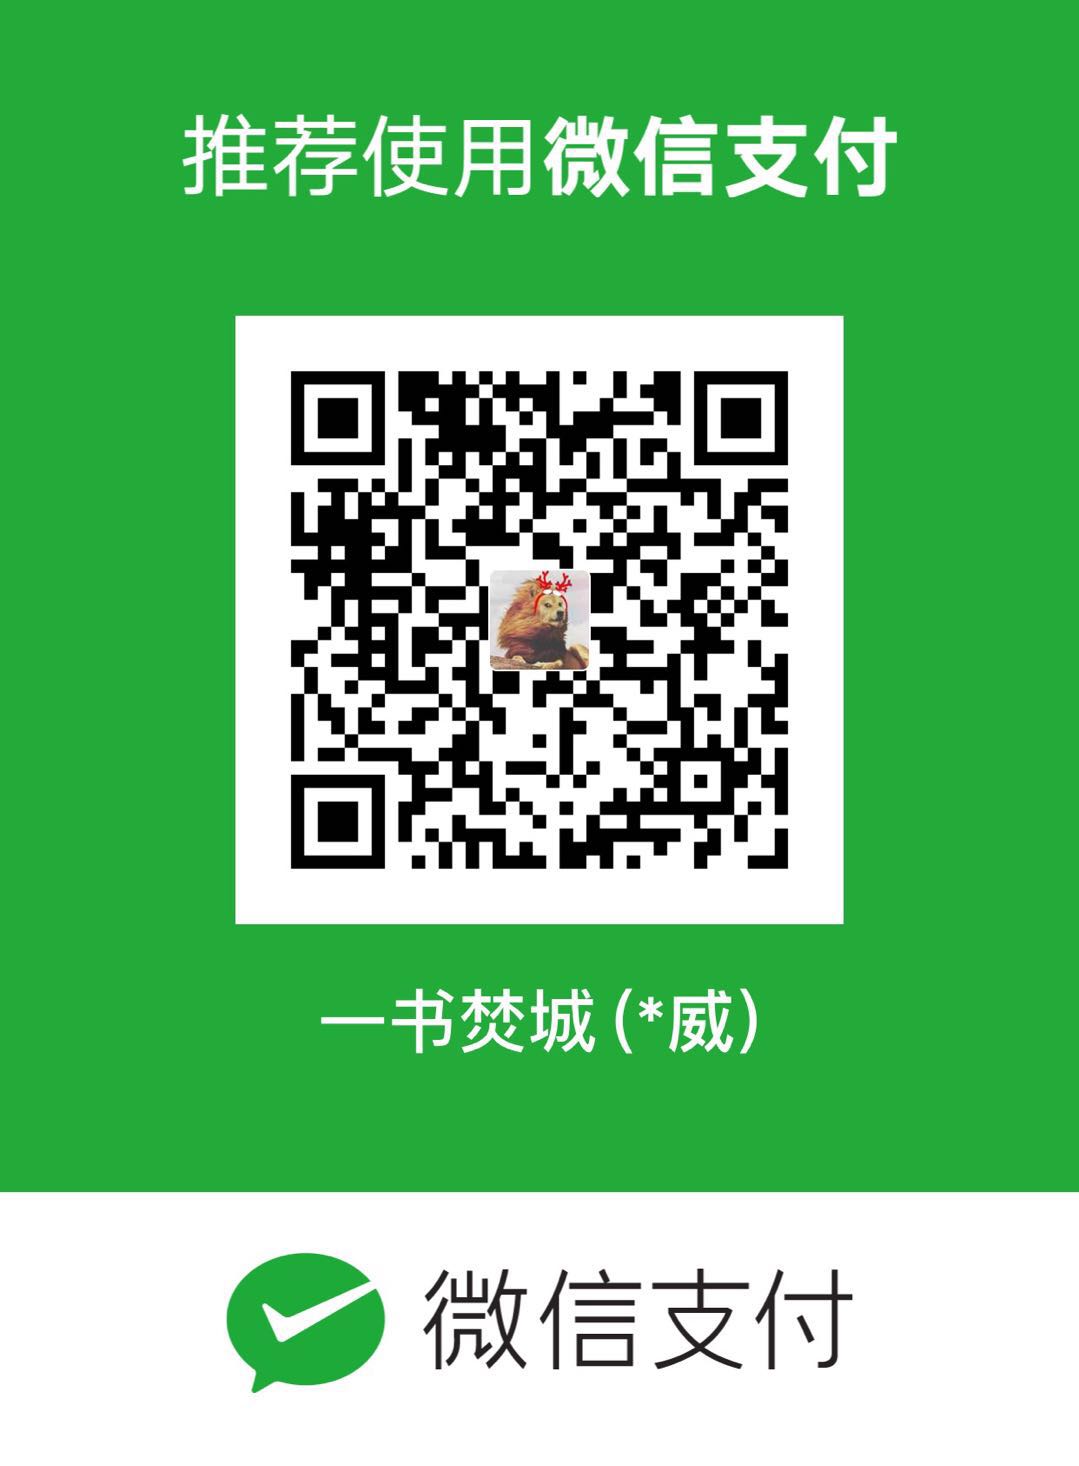 levon WeChat Pay